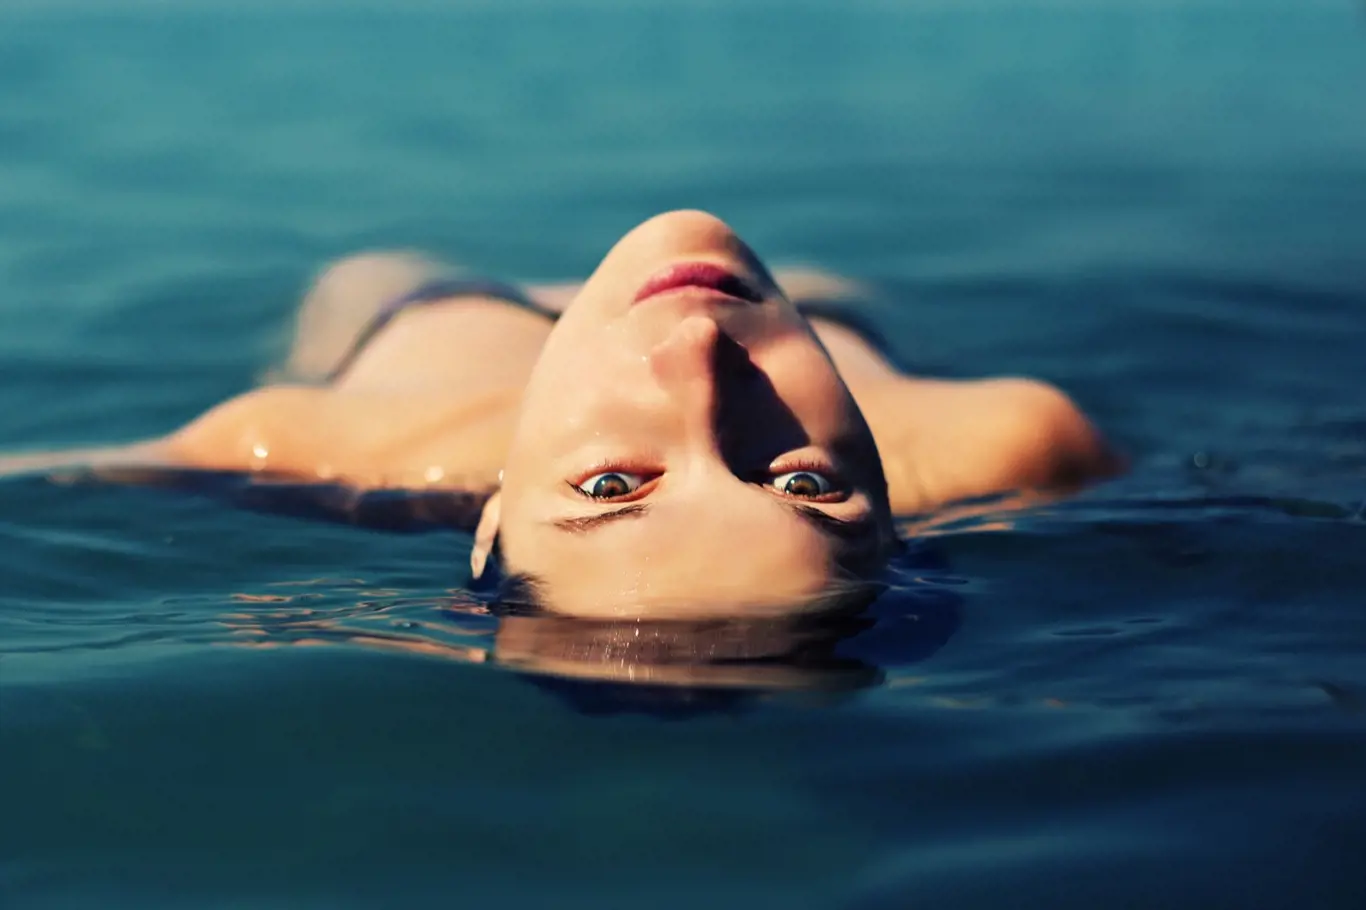 Plavání má blahodárný vliv pro tělo i duši.